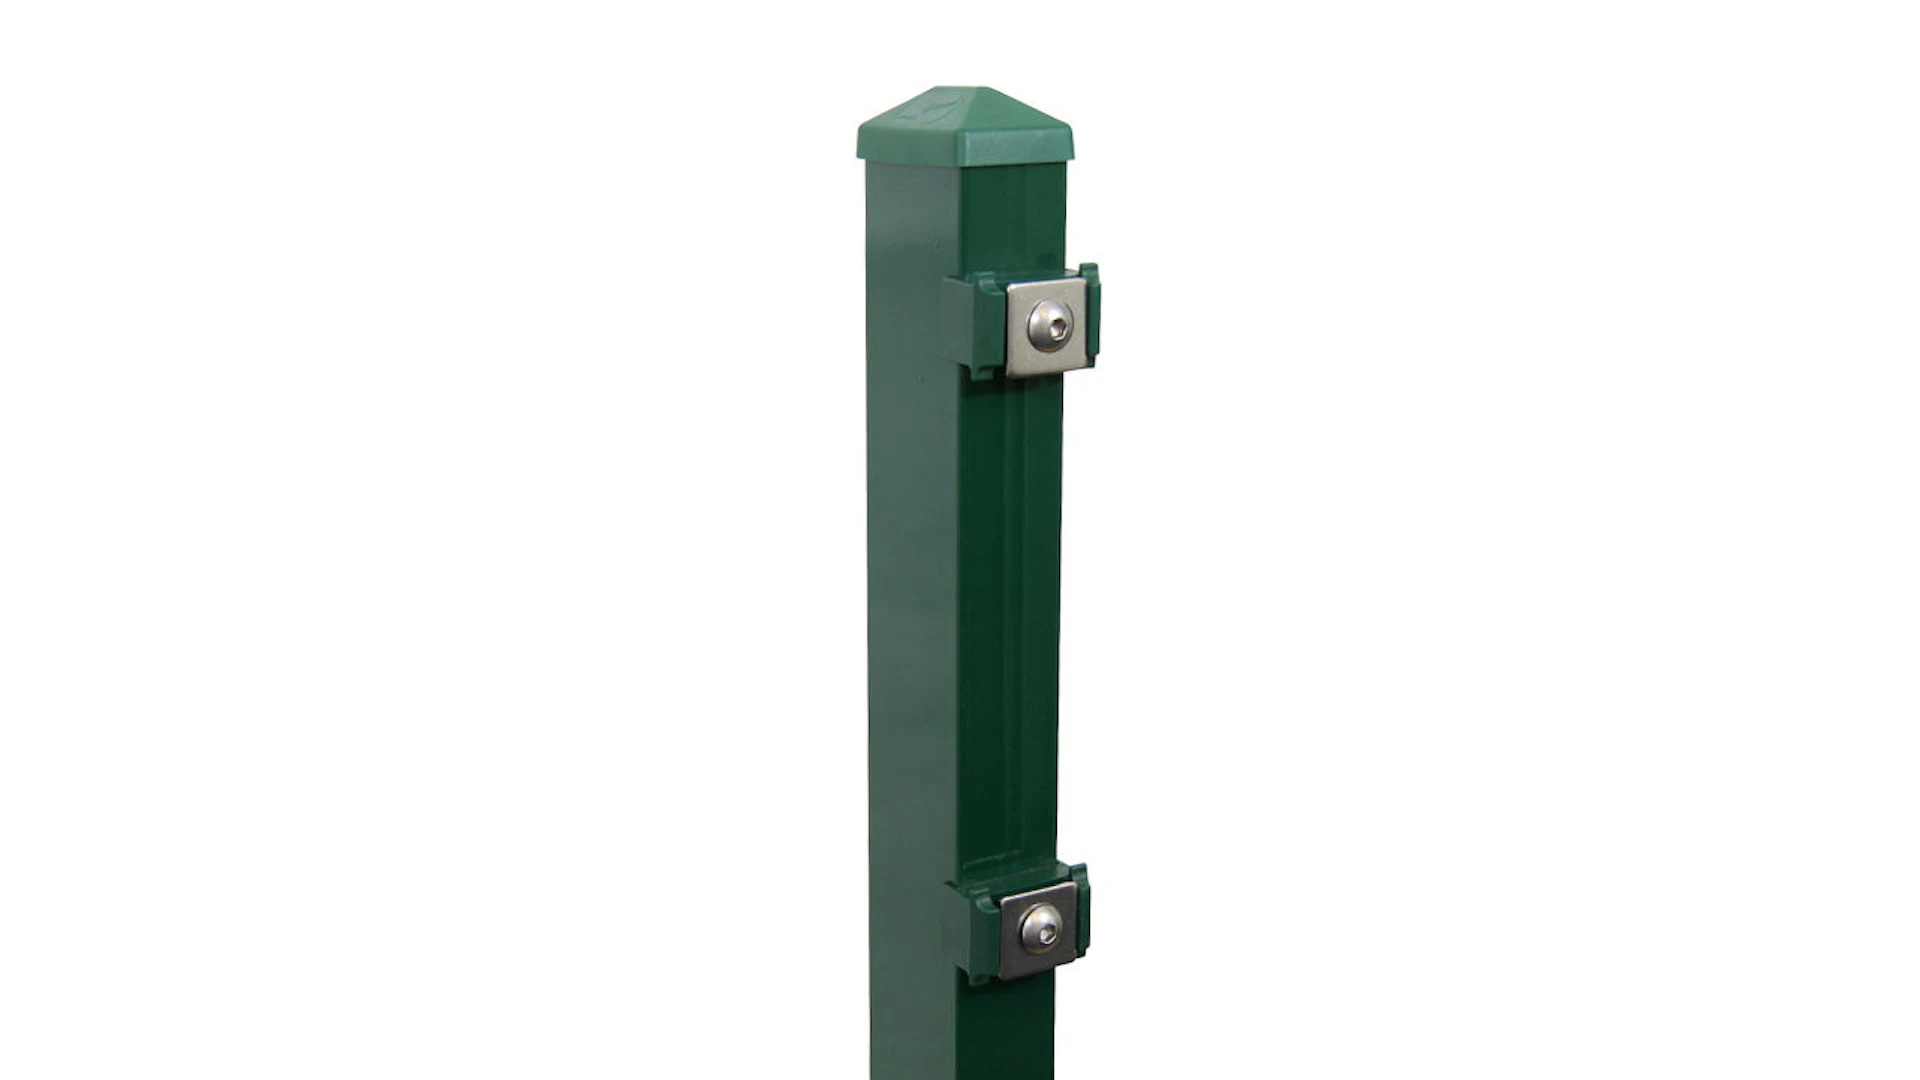 Poteau de clôture de type P vert mousse pour clôture à double maille - hauteur de la clôture 630 mm